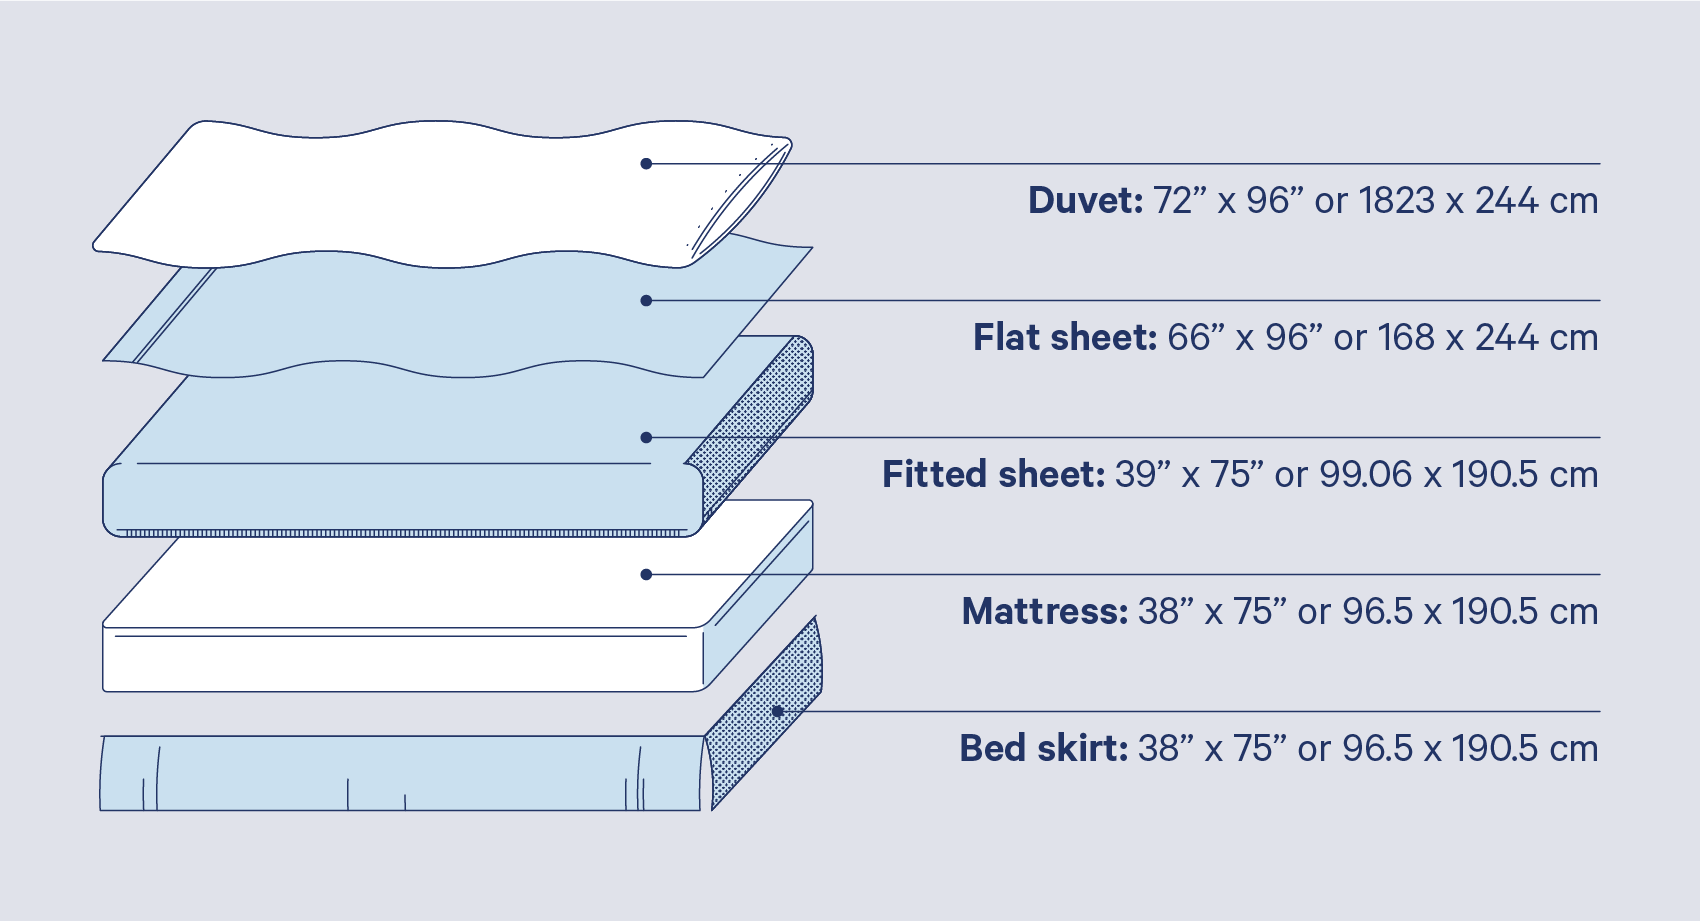 sheet between mattress and bed sheet